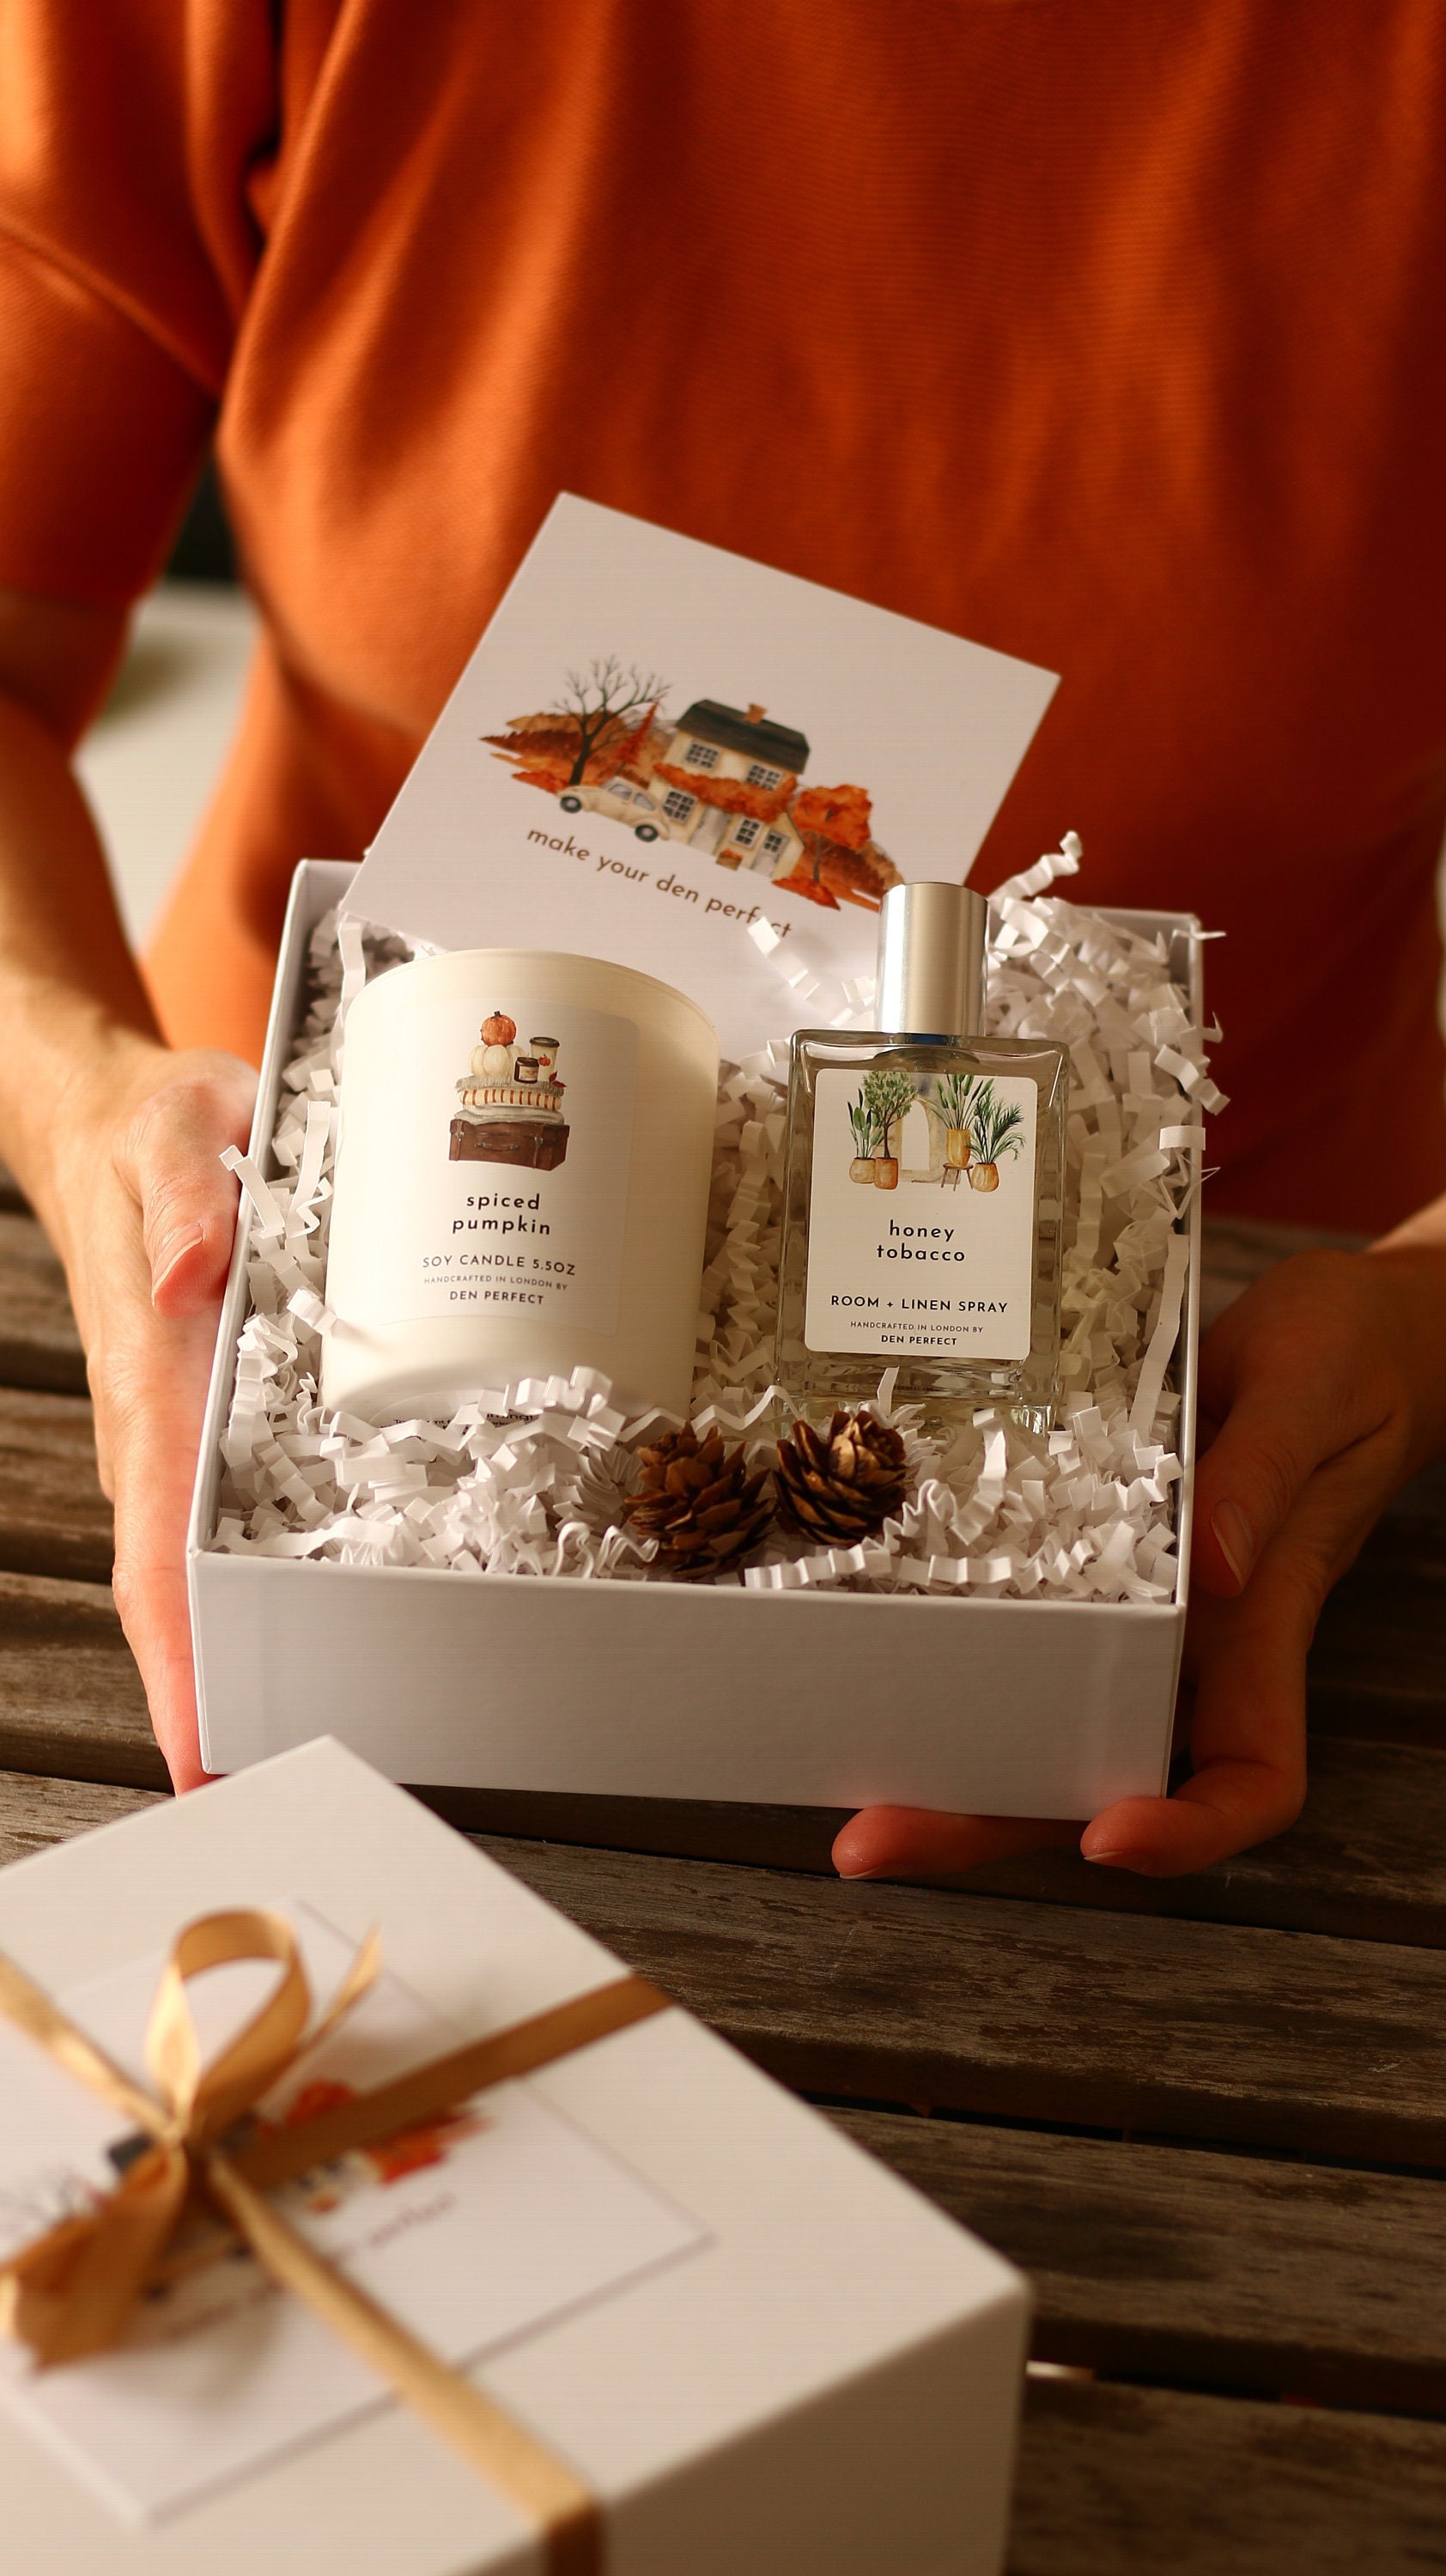 Spiced Pumpkin Geschenkset, Sojakerze Und Room + Linen Spray Geschenkbox Herbst Geschenkset von DenPerfectUK